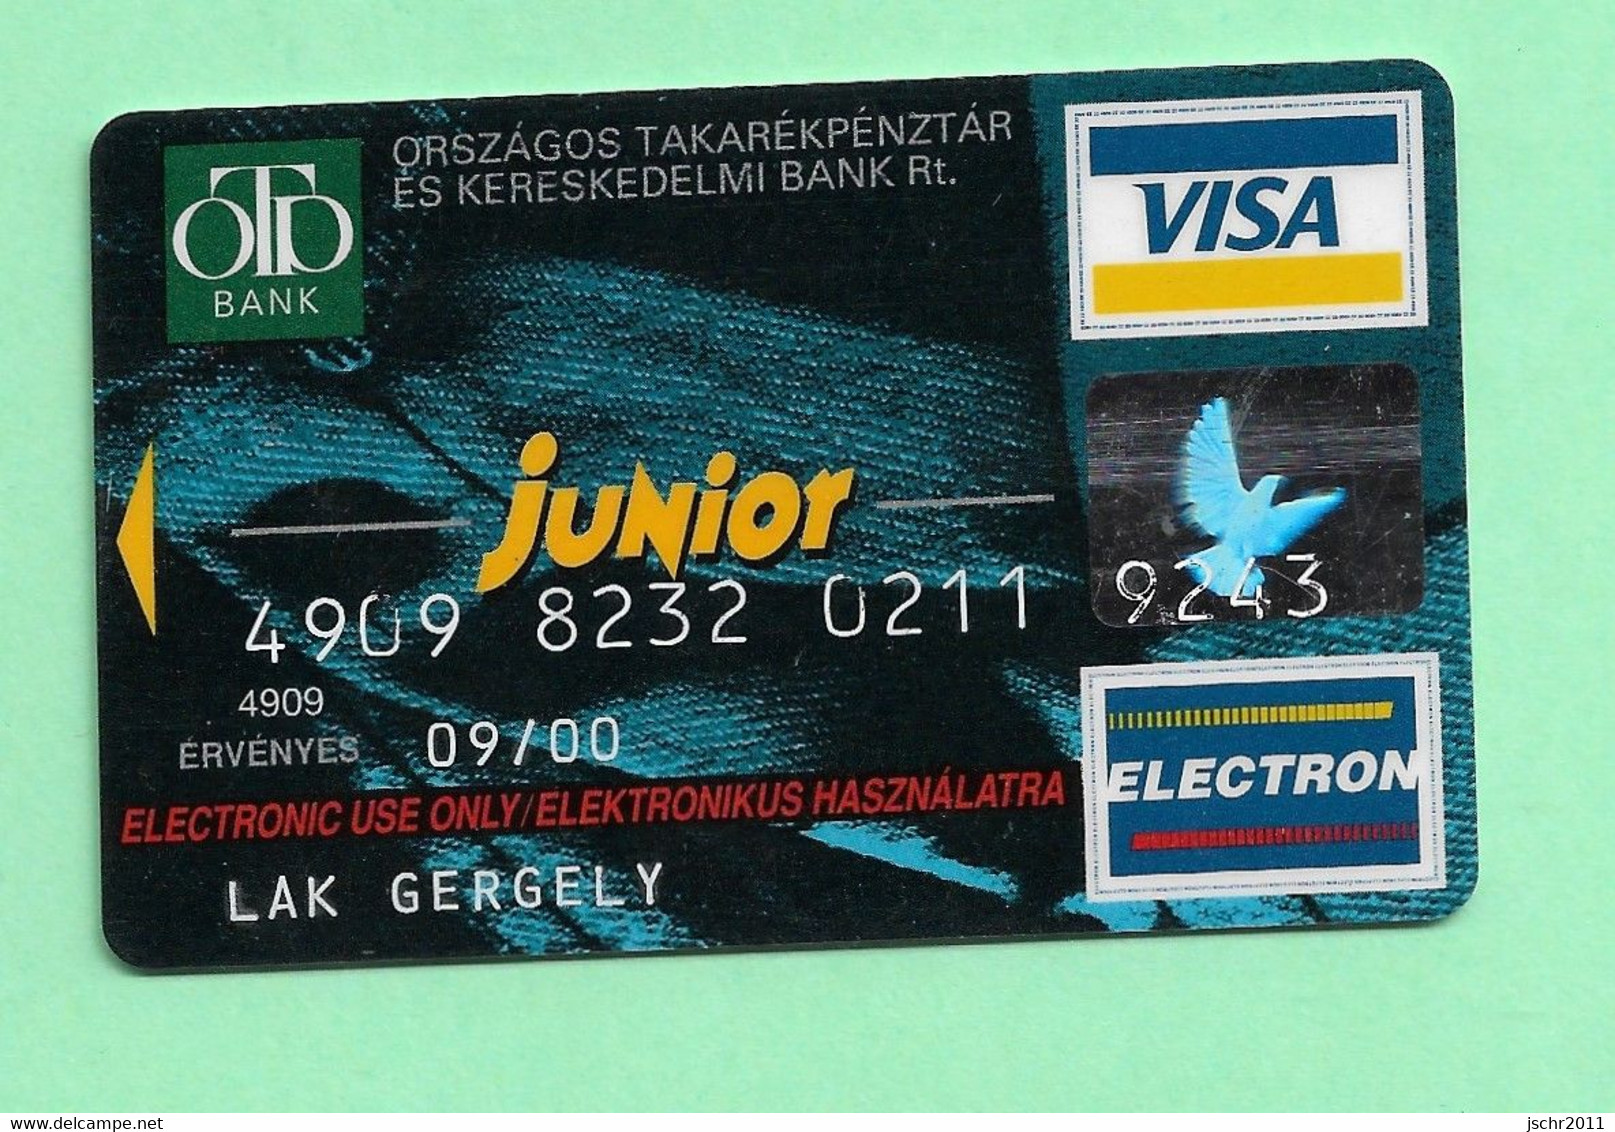 CARTE VISA ELECTRON *** OTD BANK *** (A7-P6) - Vervallen Bankkaarten